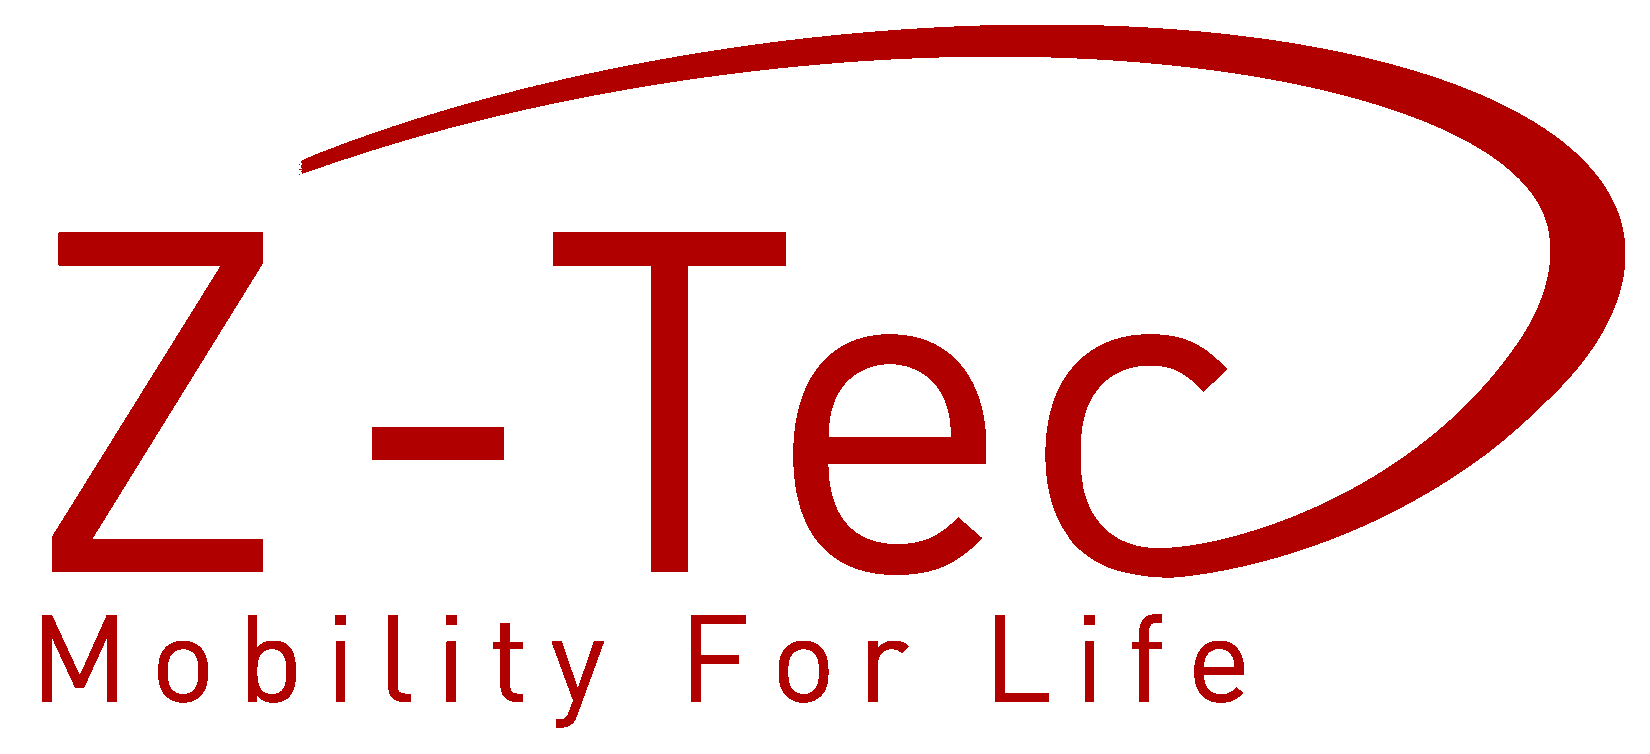 Z-Tec Mobility Ltd